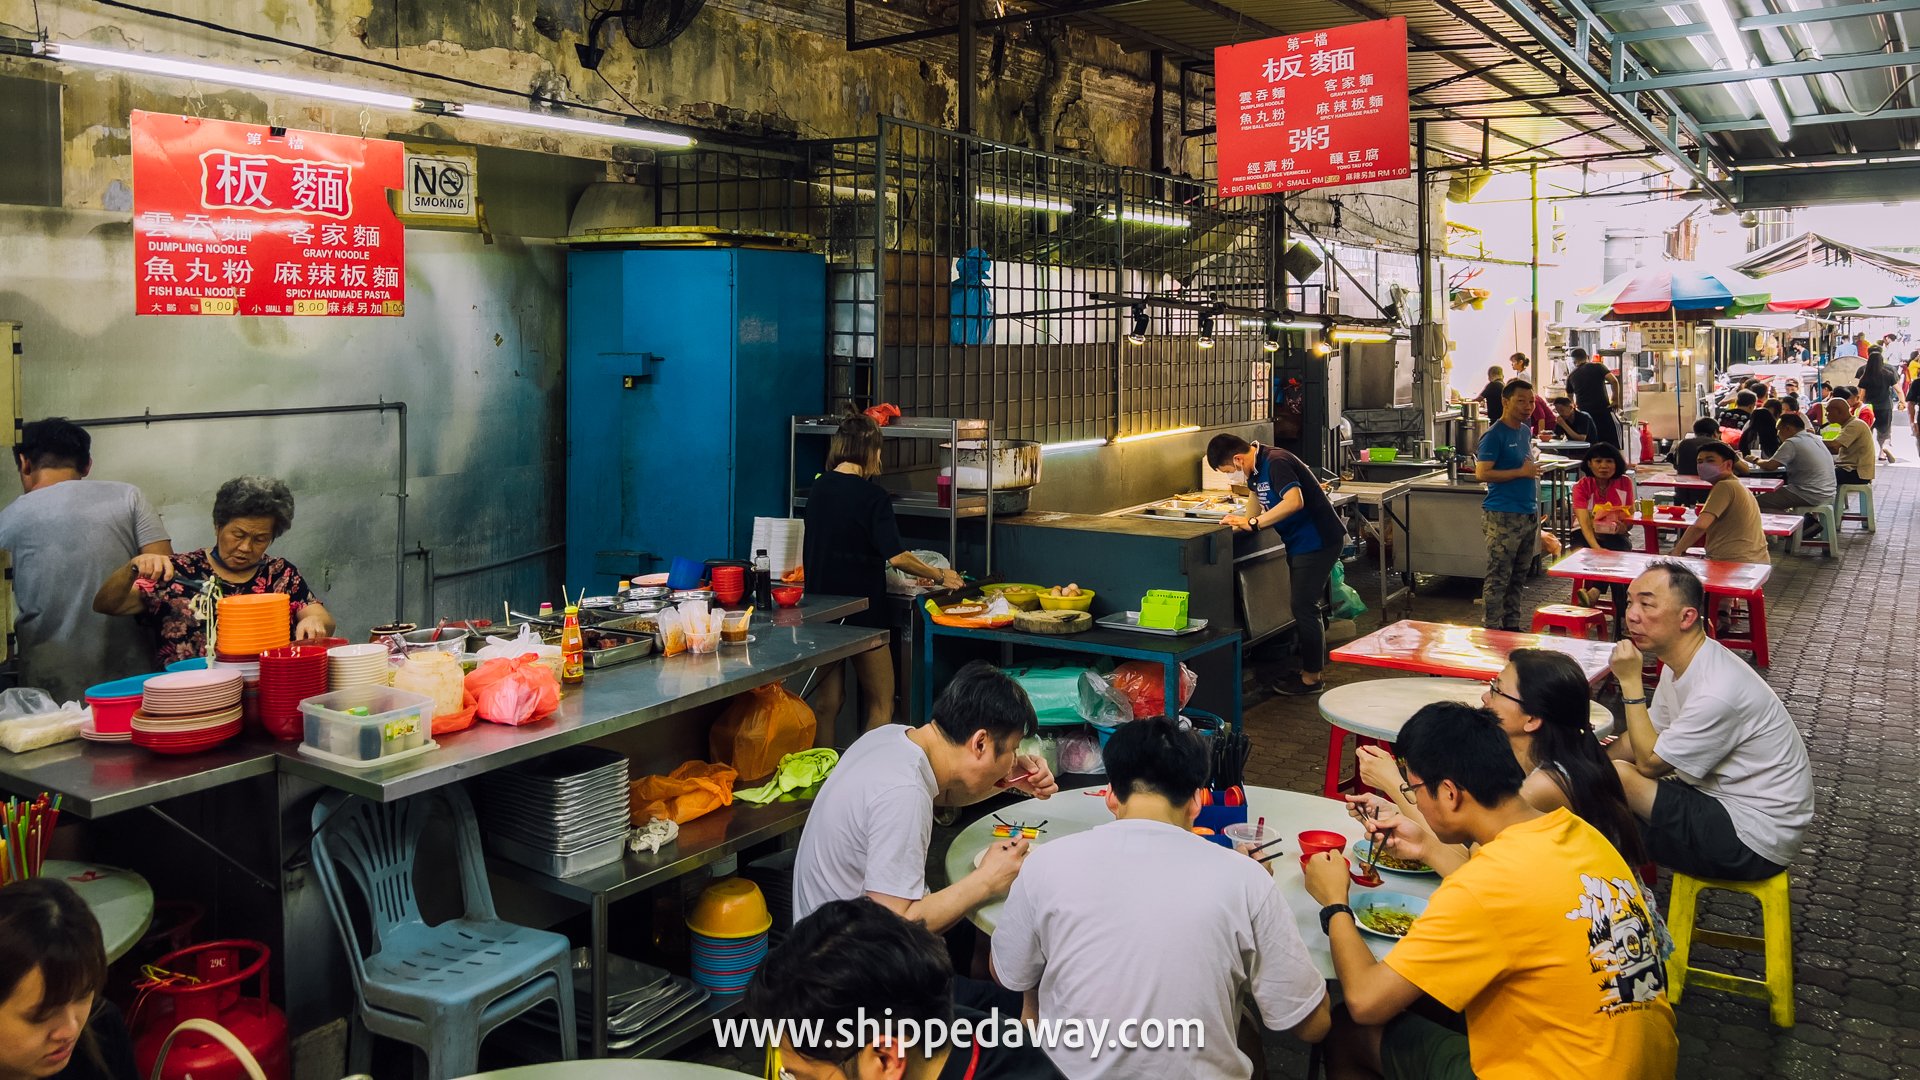 Food court in Chinatown in Kuala Lumpur, Malaysia